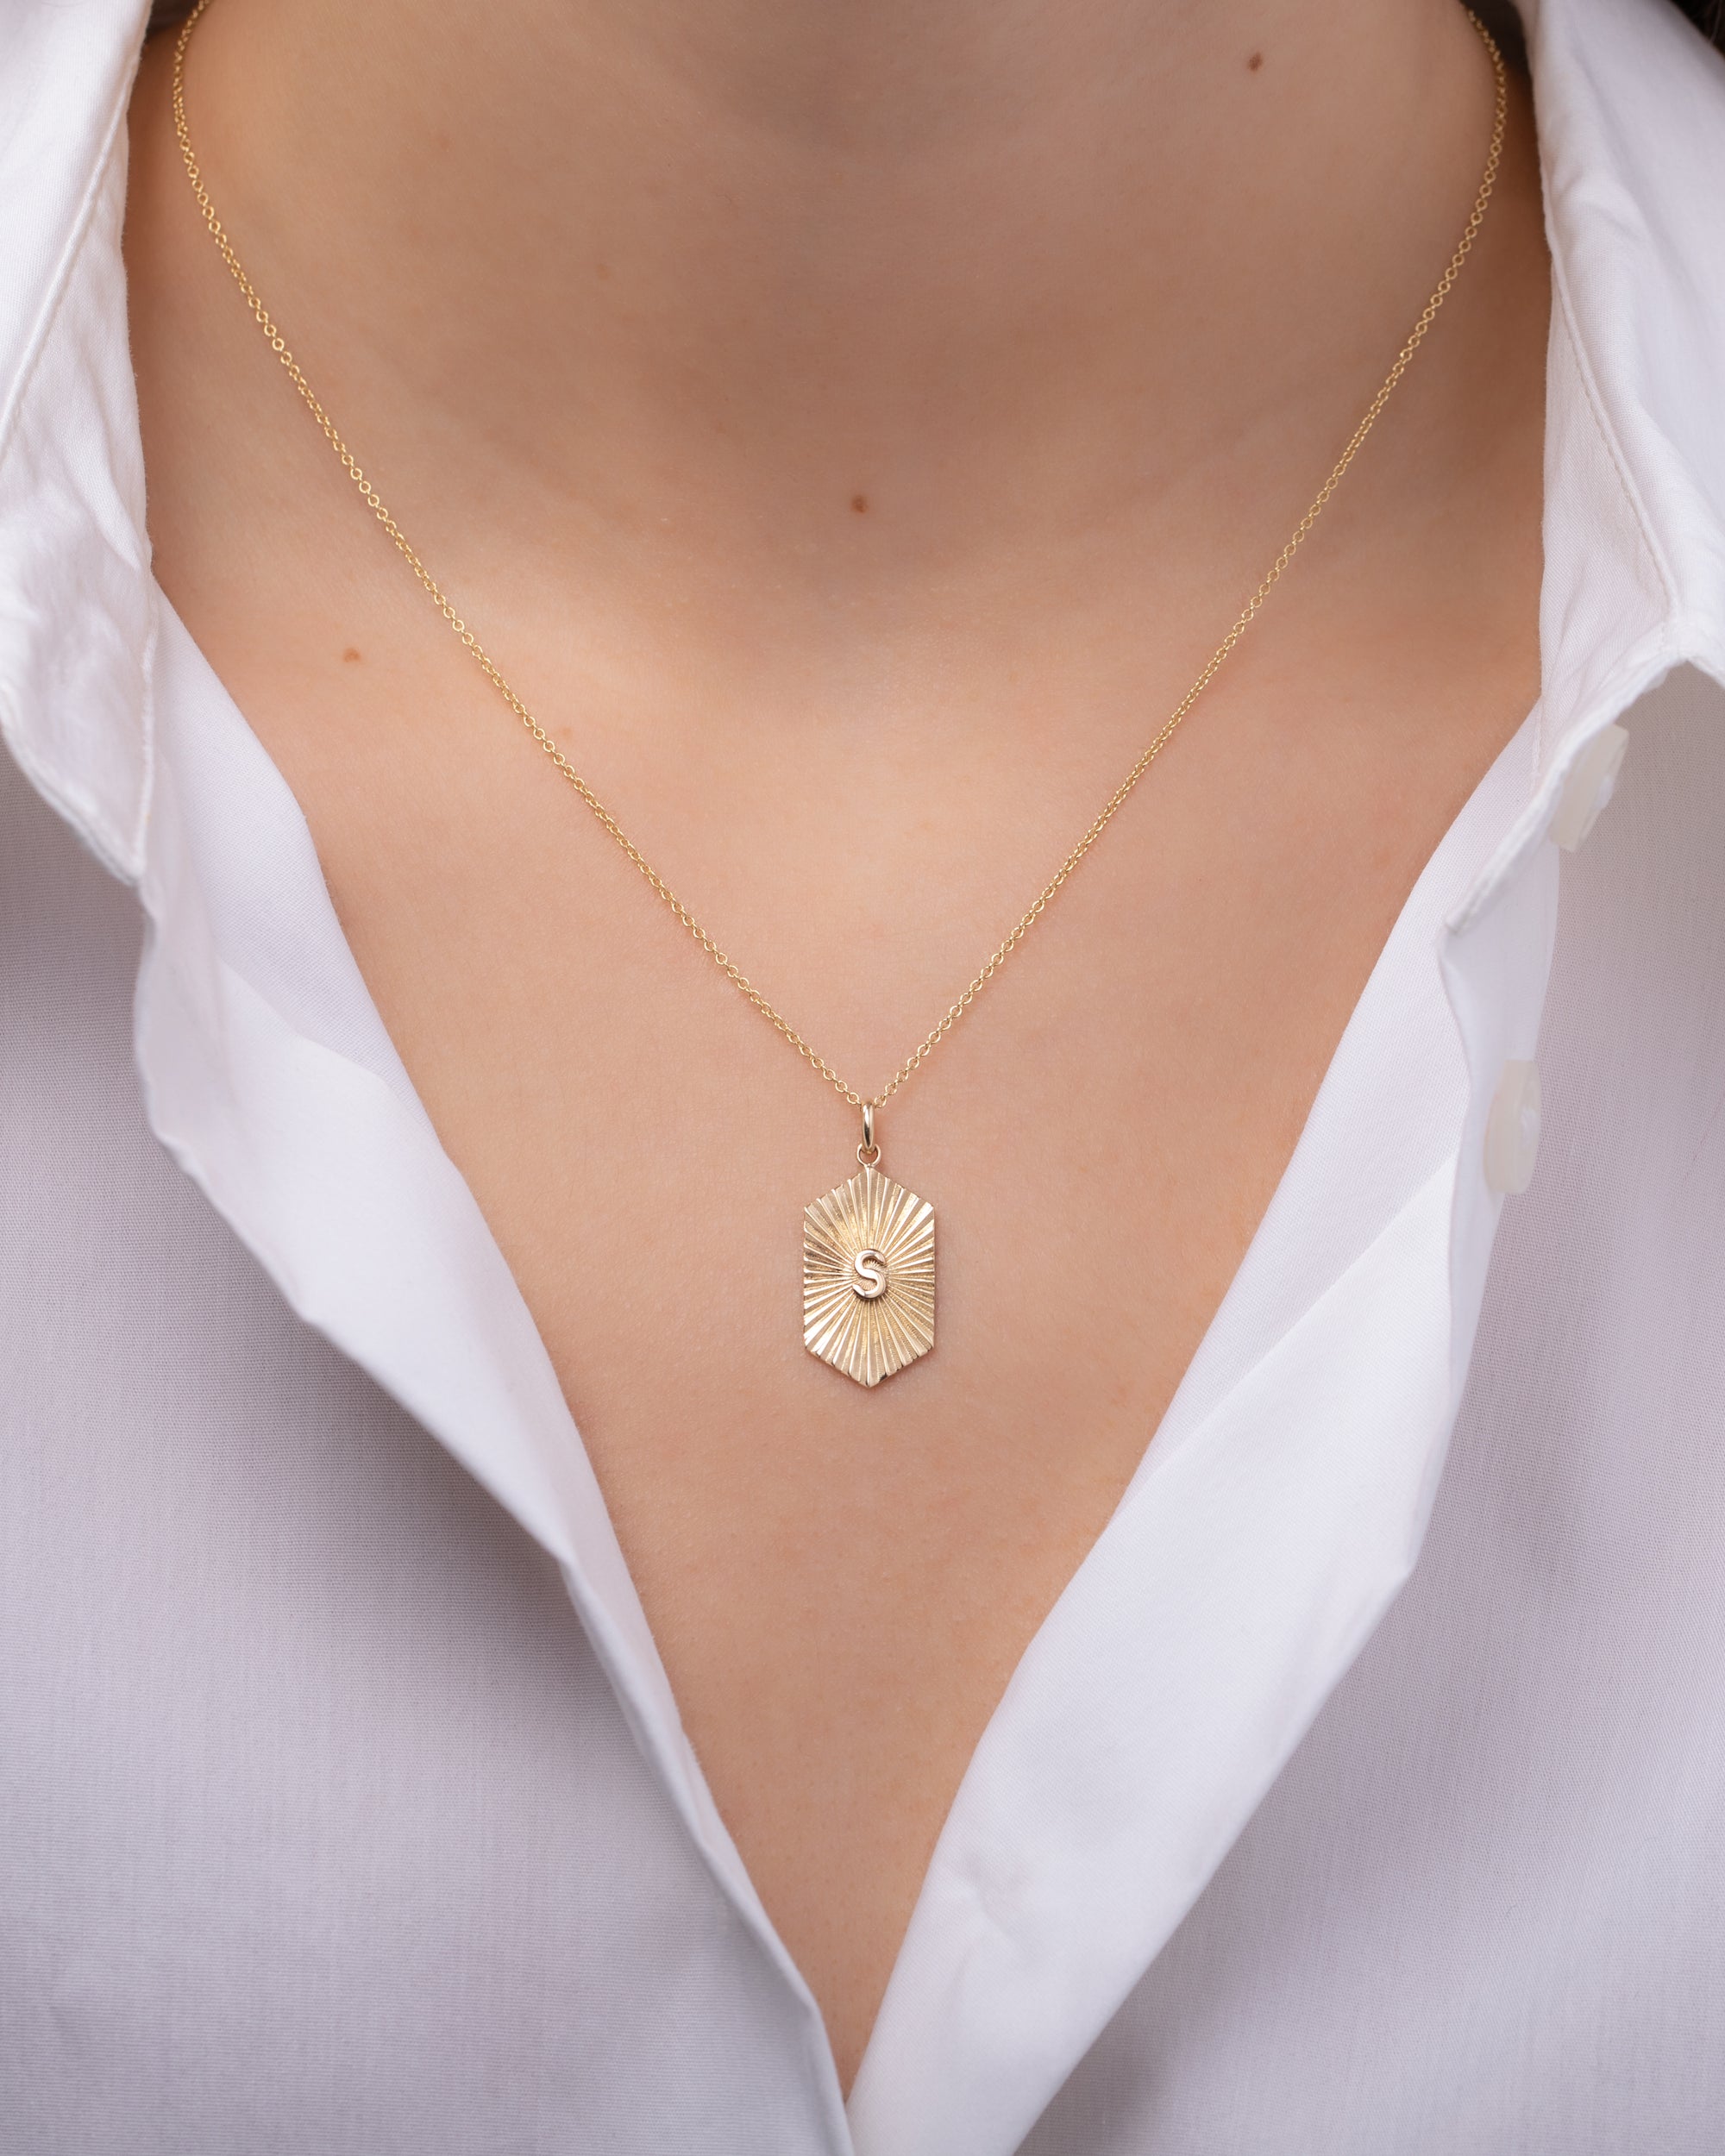 Louis Vuitton Pave Diamond Necklace Pendant 18K Rose Gold 0.05 Cttw -  Chronostore